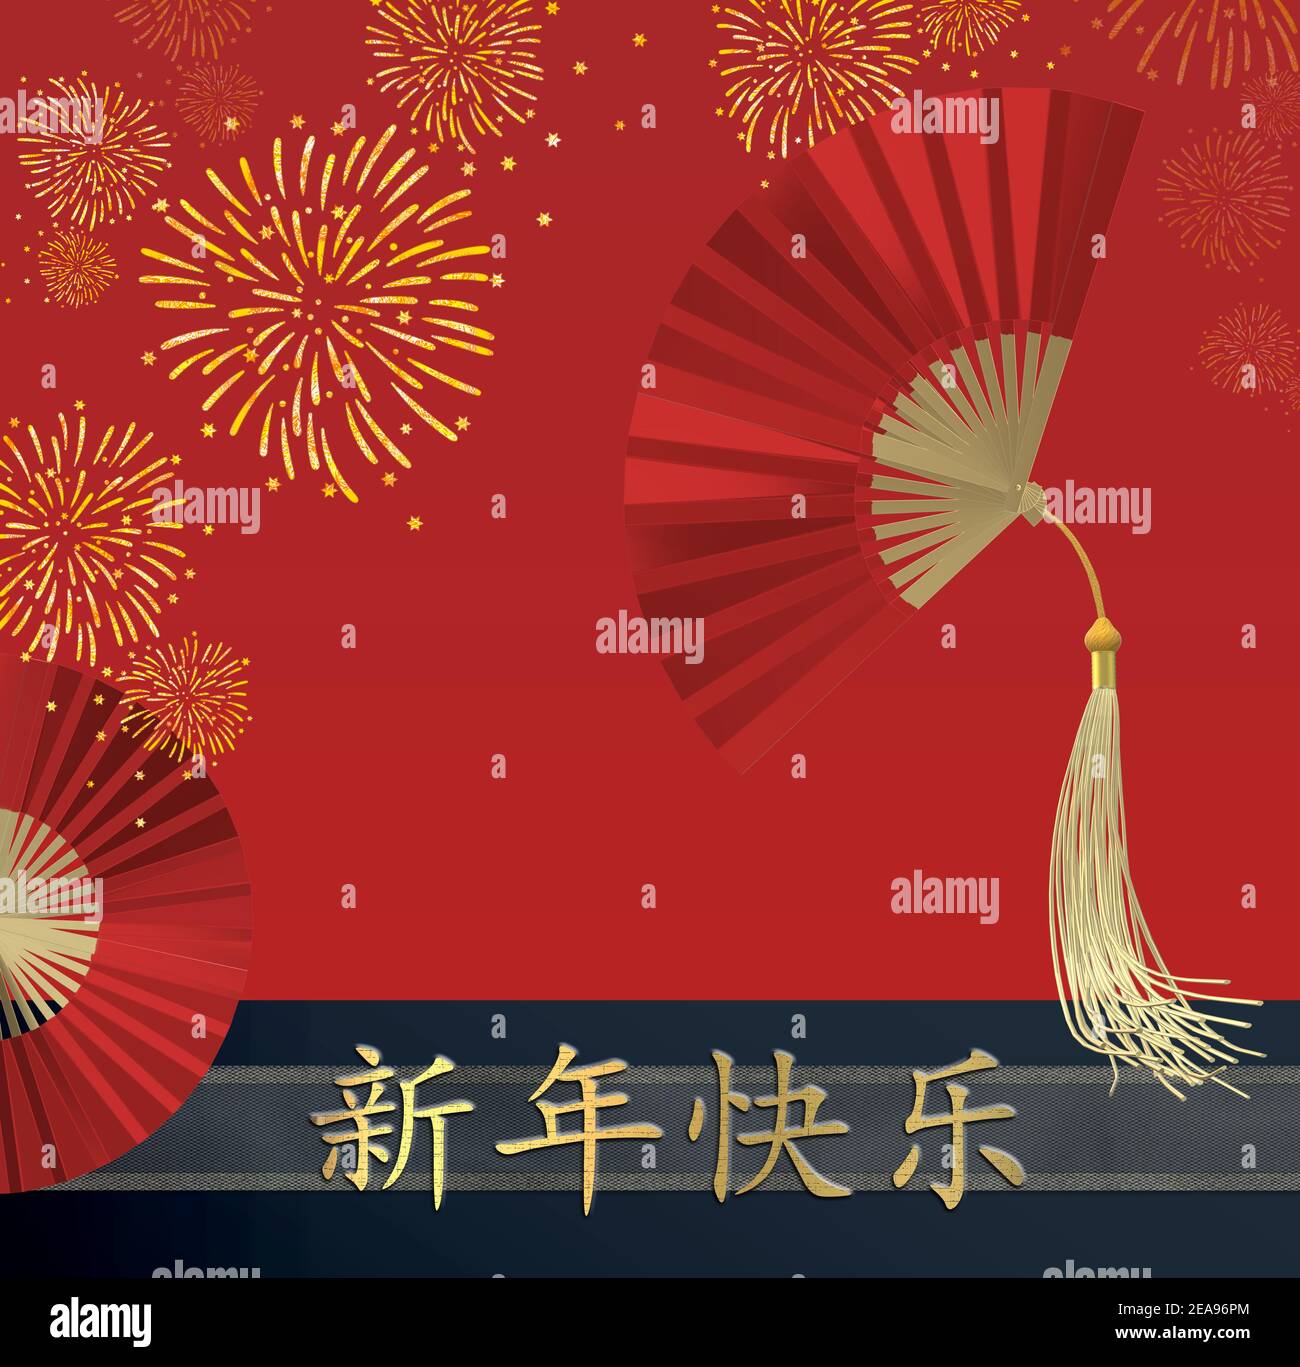 Bonne année chinoise. Ventilateurs de papier rouge, feux d'artifice sur fond bleu. Vacances traditionnelles lunaires nouvel an. Gold texte traduction chinoise Happy New Ye Banque D'Images